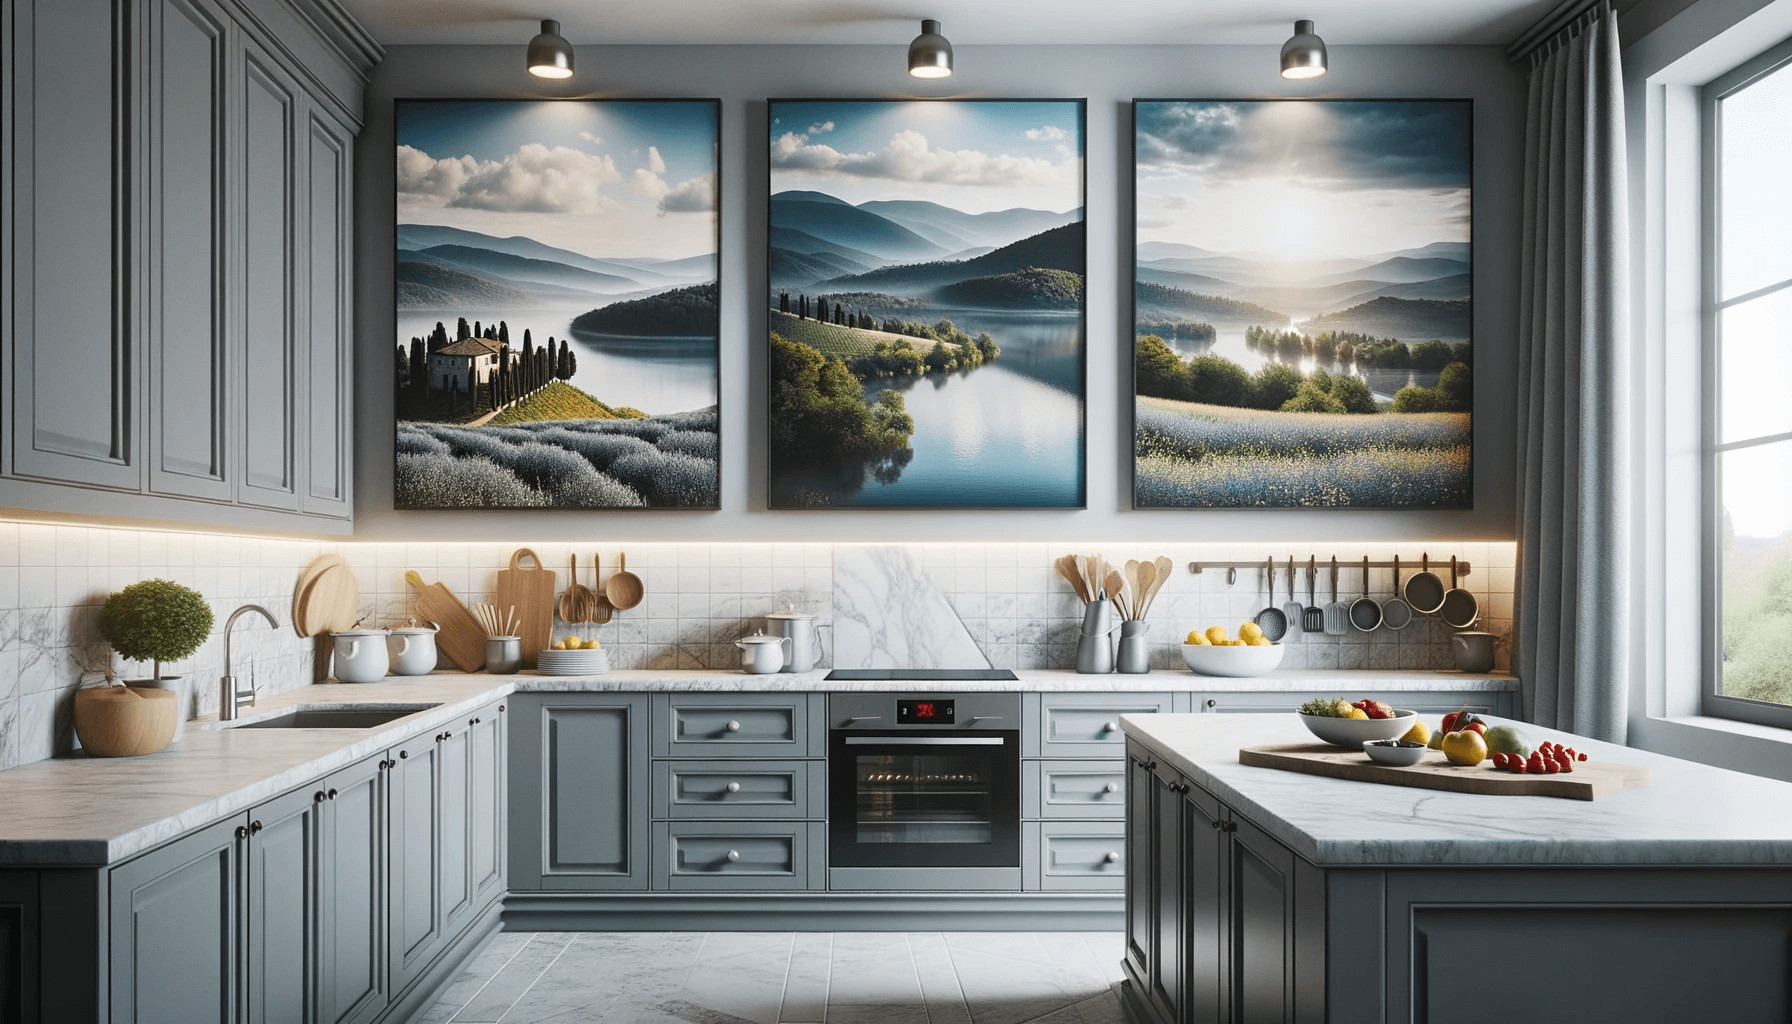 Come Arredare una Cucina con quadri. in questa immagine una cucina moderna con ripiano in marmo ha 3 quadri che coprono la parete.